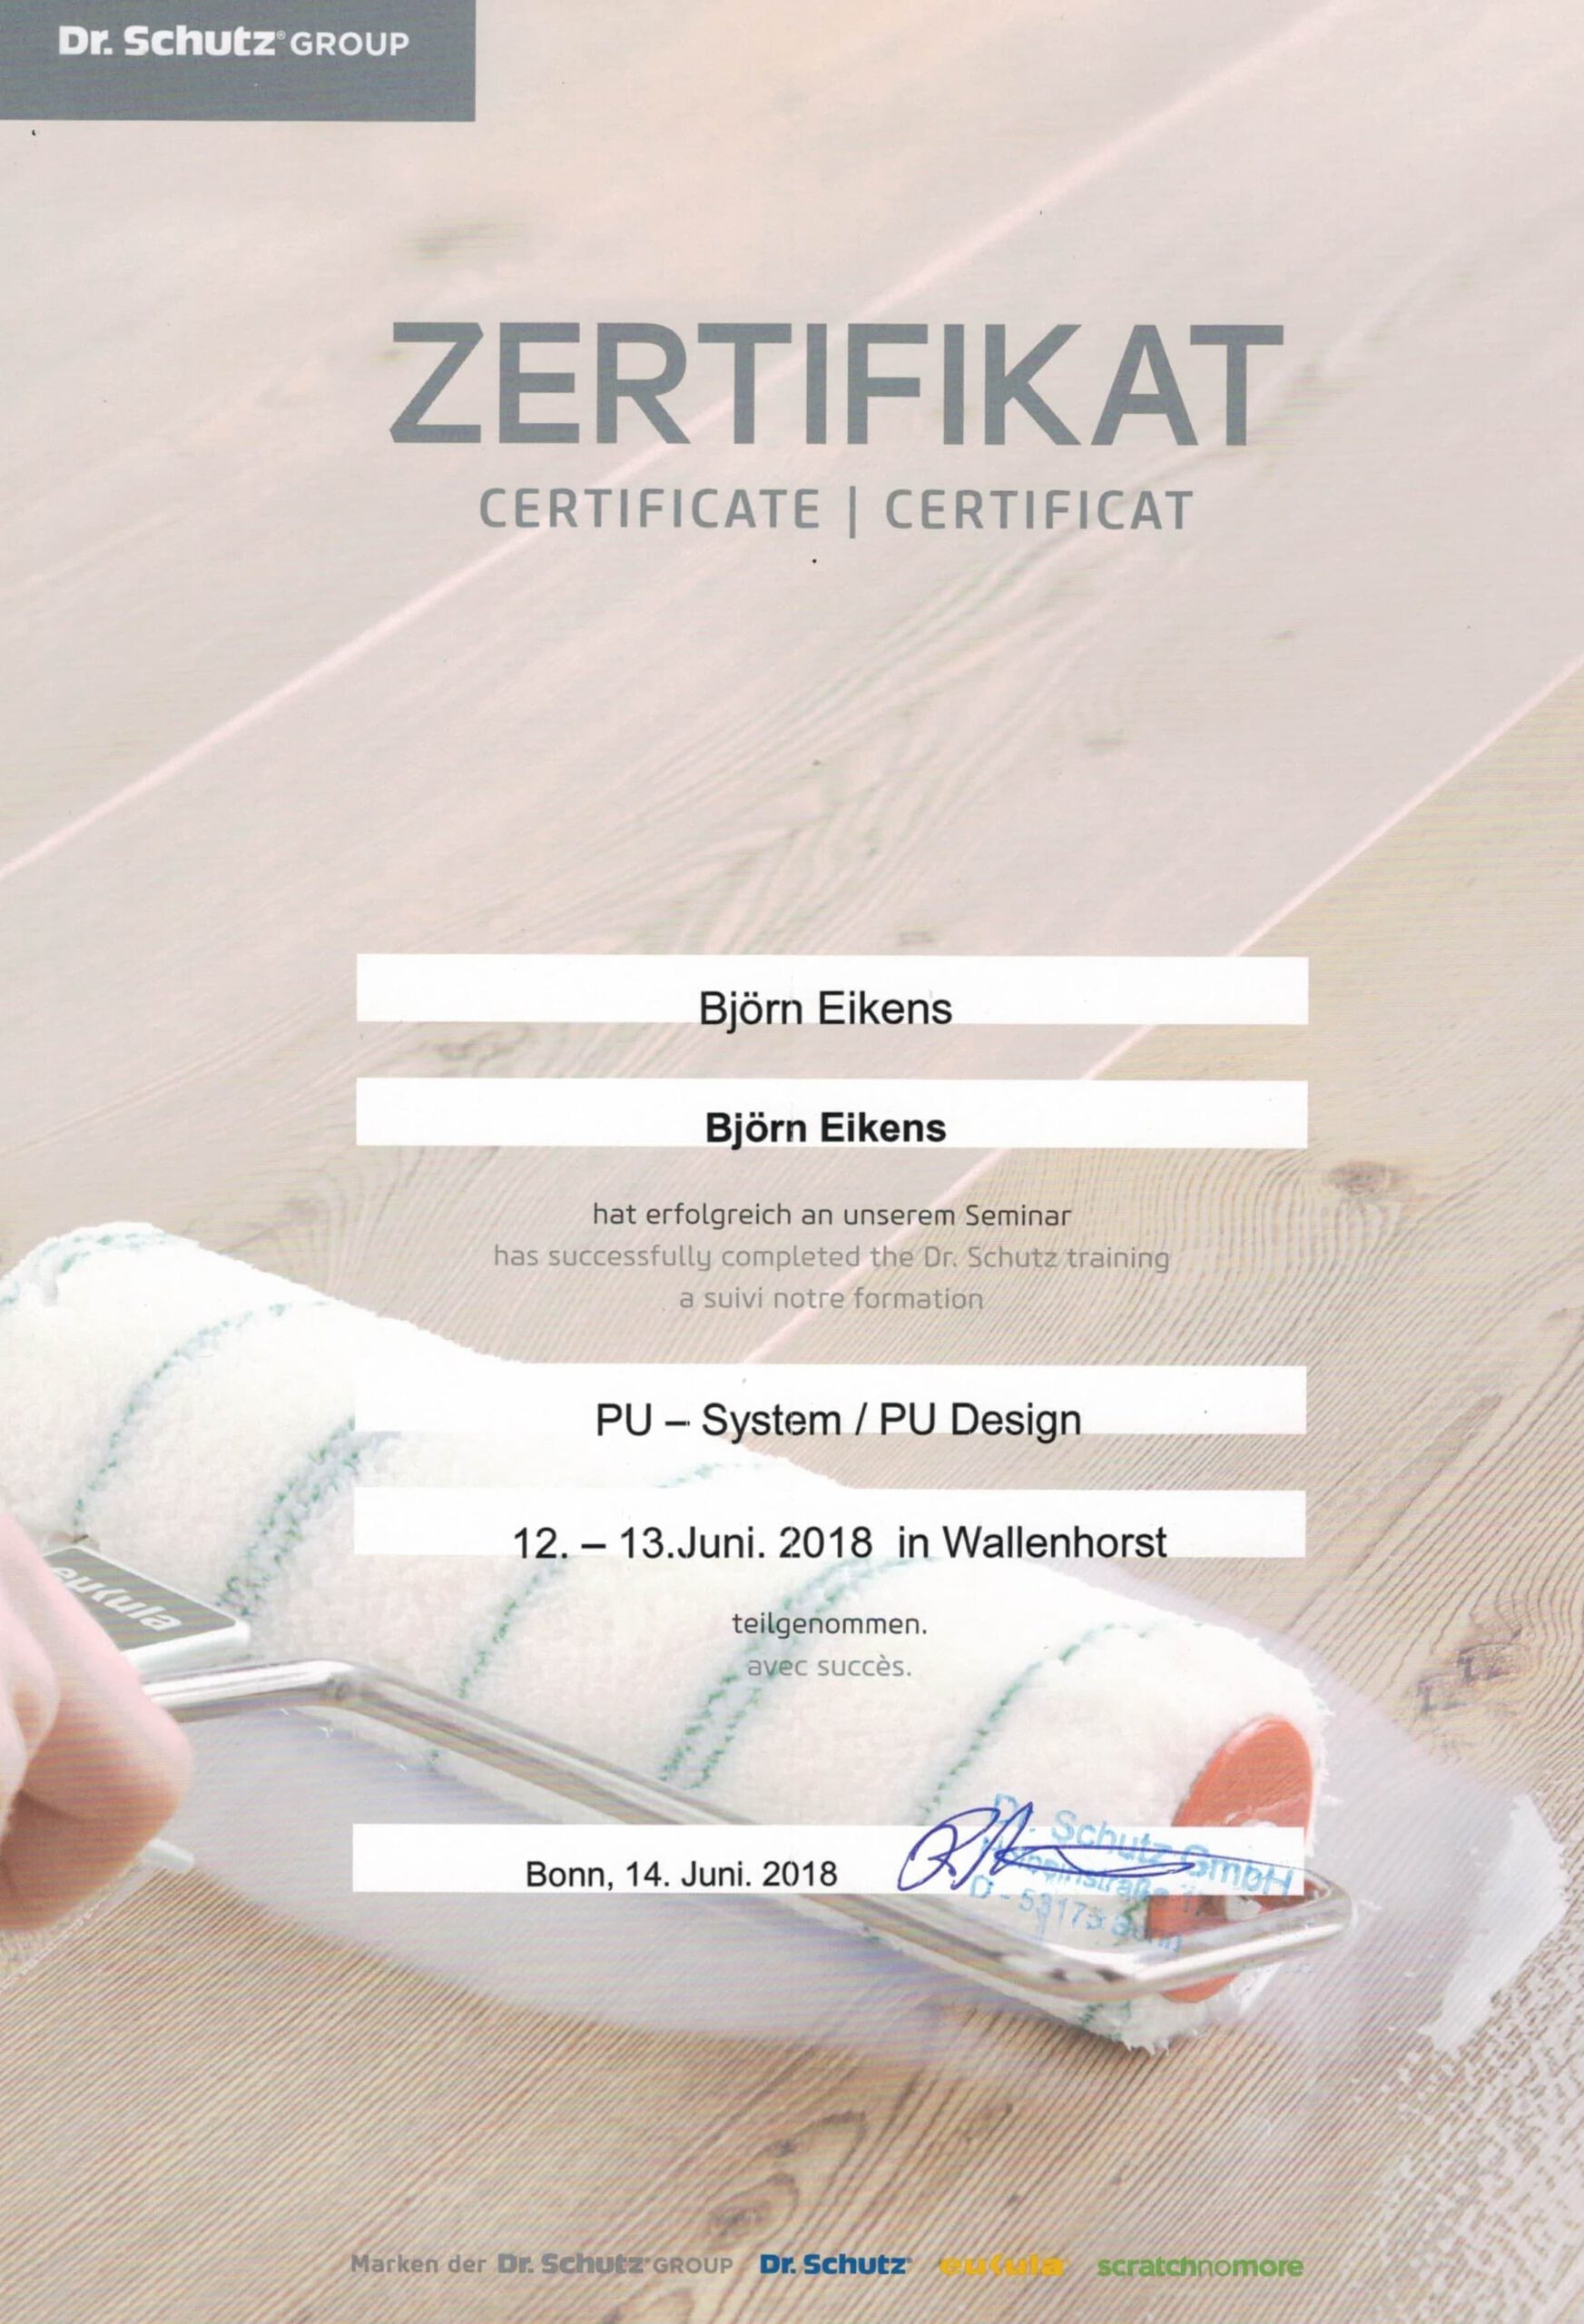 Zertifikat von Björn Eikens für das PU-System / PU Design Seminar der Dr. Schutz Gruppe